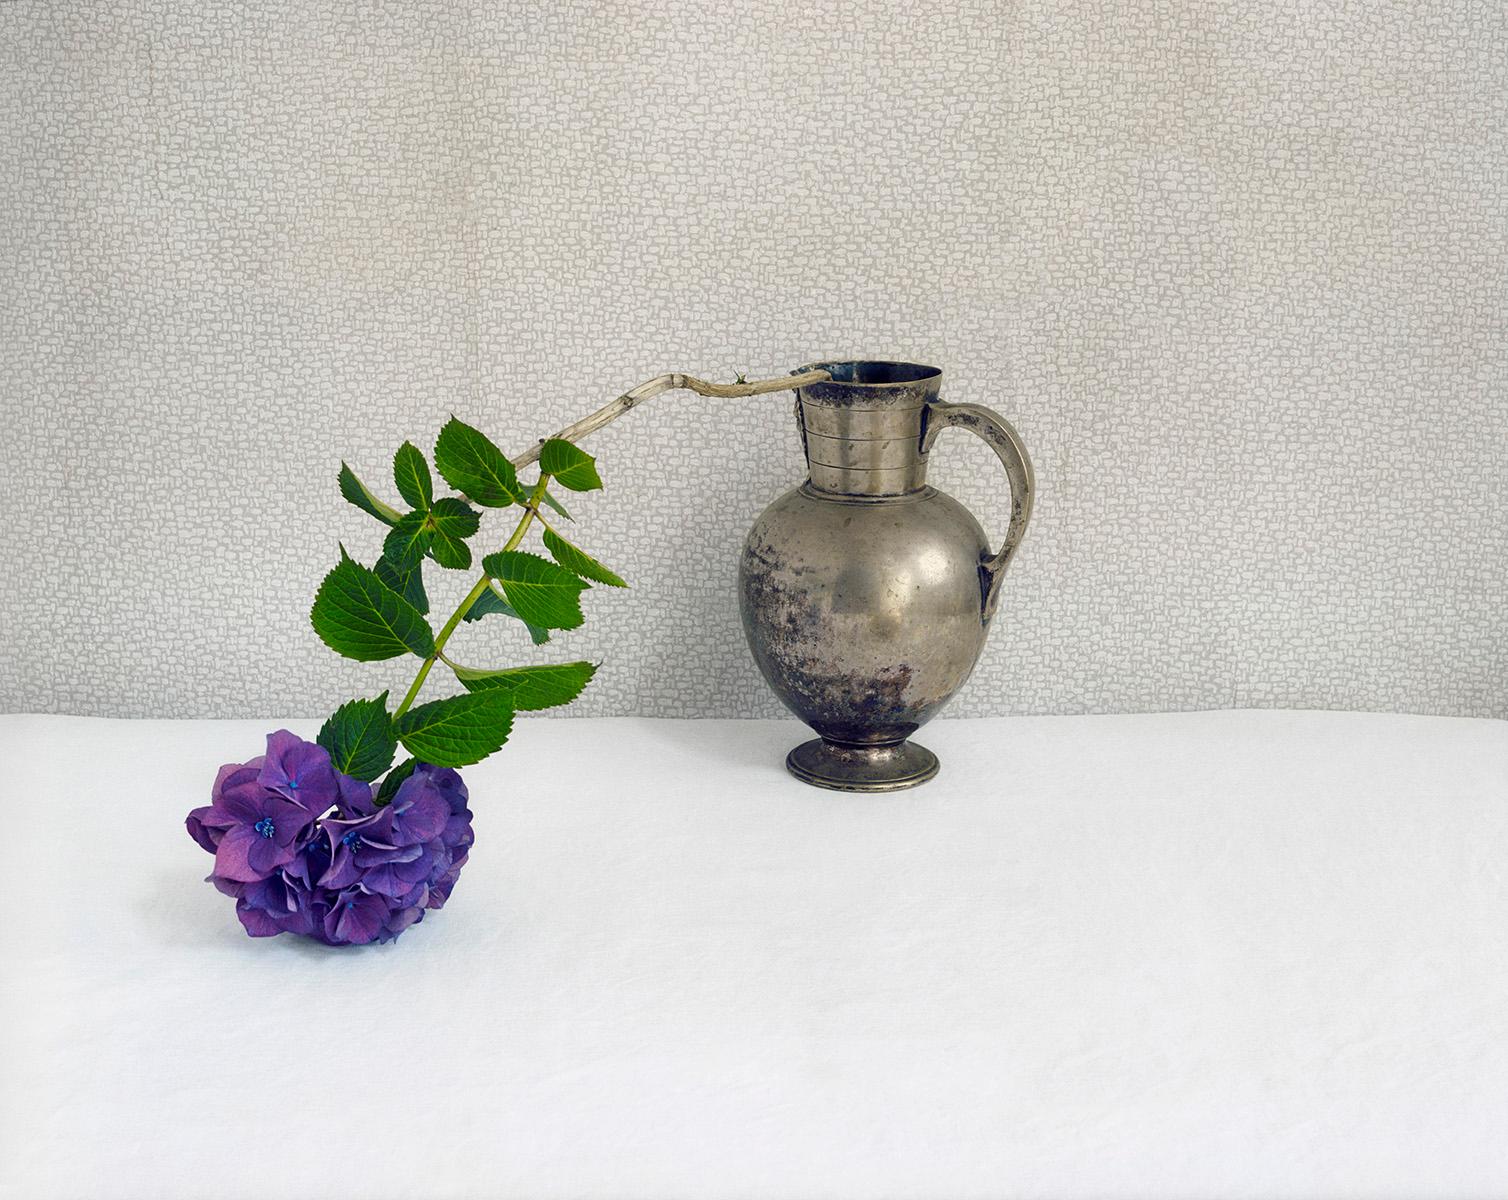 David Halliday Still-Life Photograph – Lila Hydrangea ( zeitgenössische Stilllebenfotografie einer Blume in Silbervase)